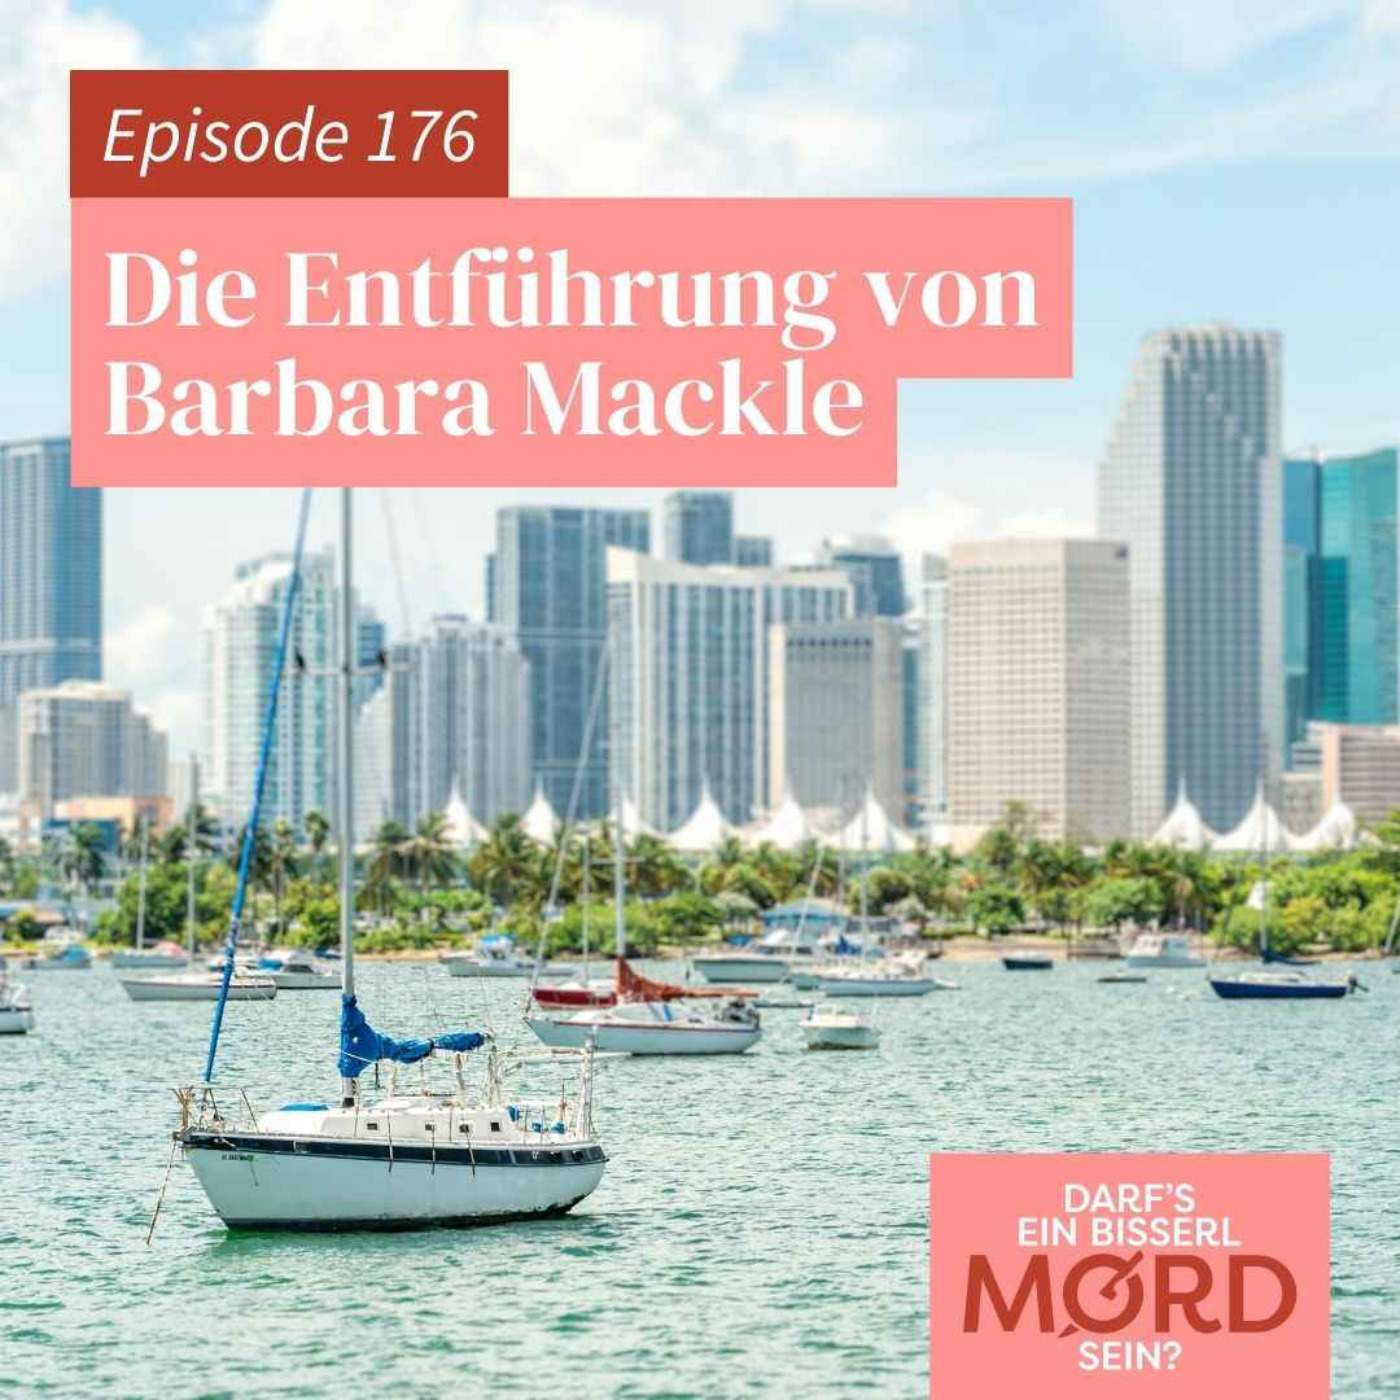 Episode 176: Die Entführung von Barbara Mackle